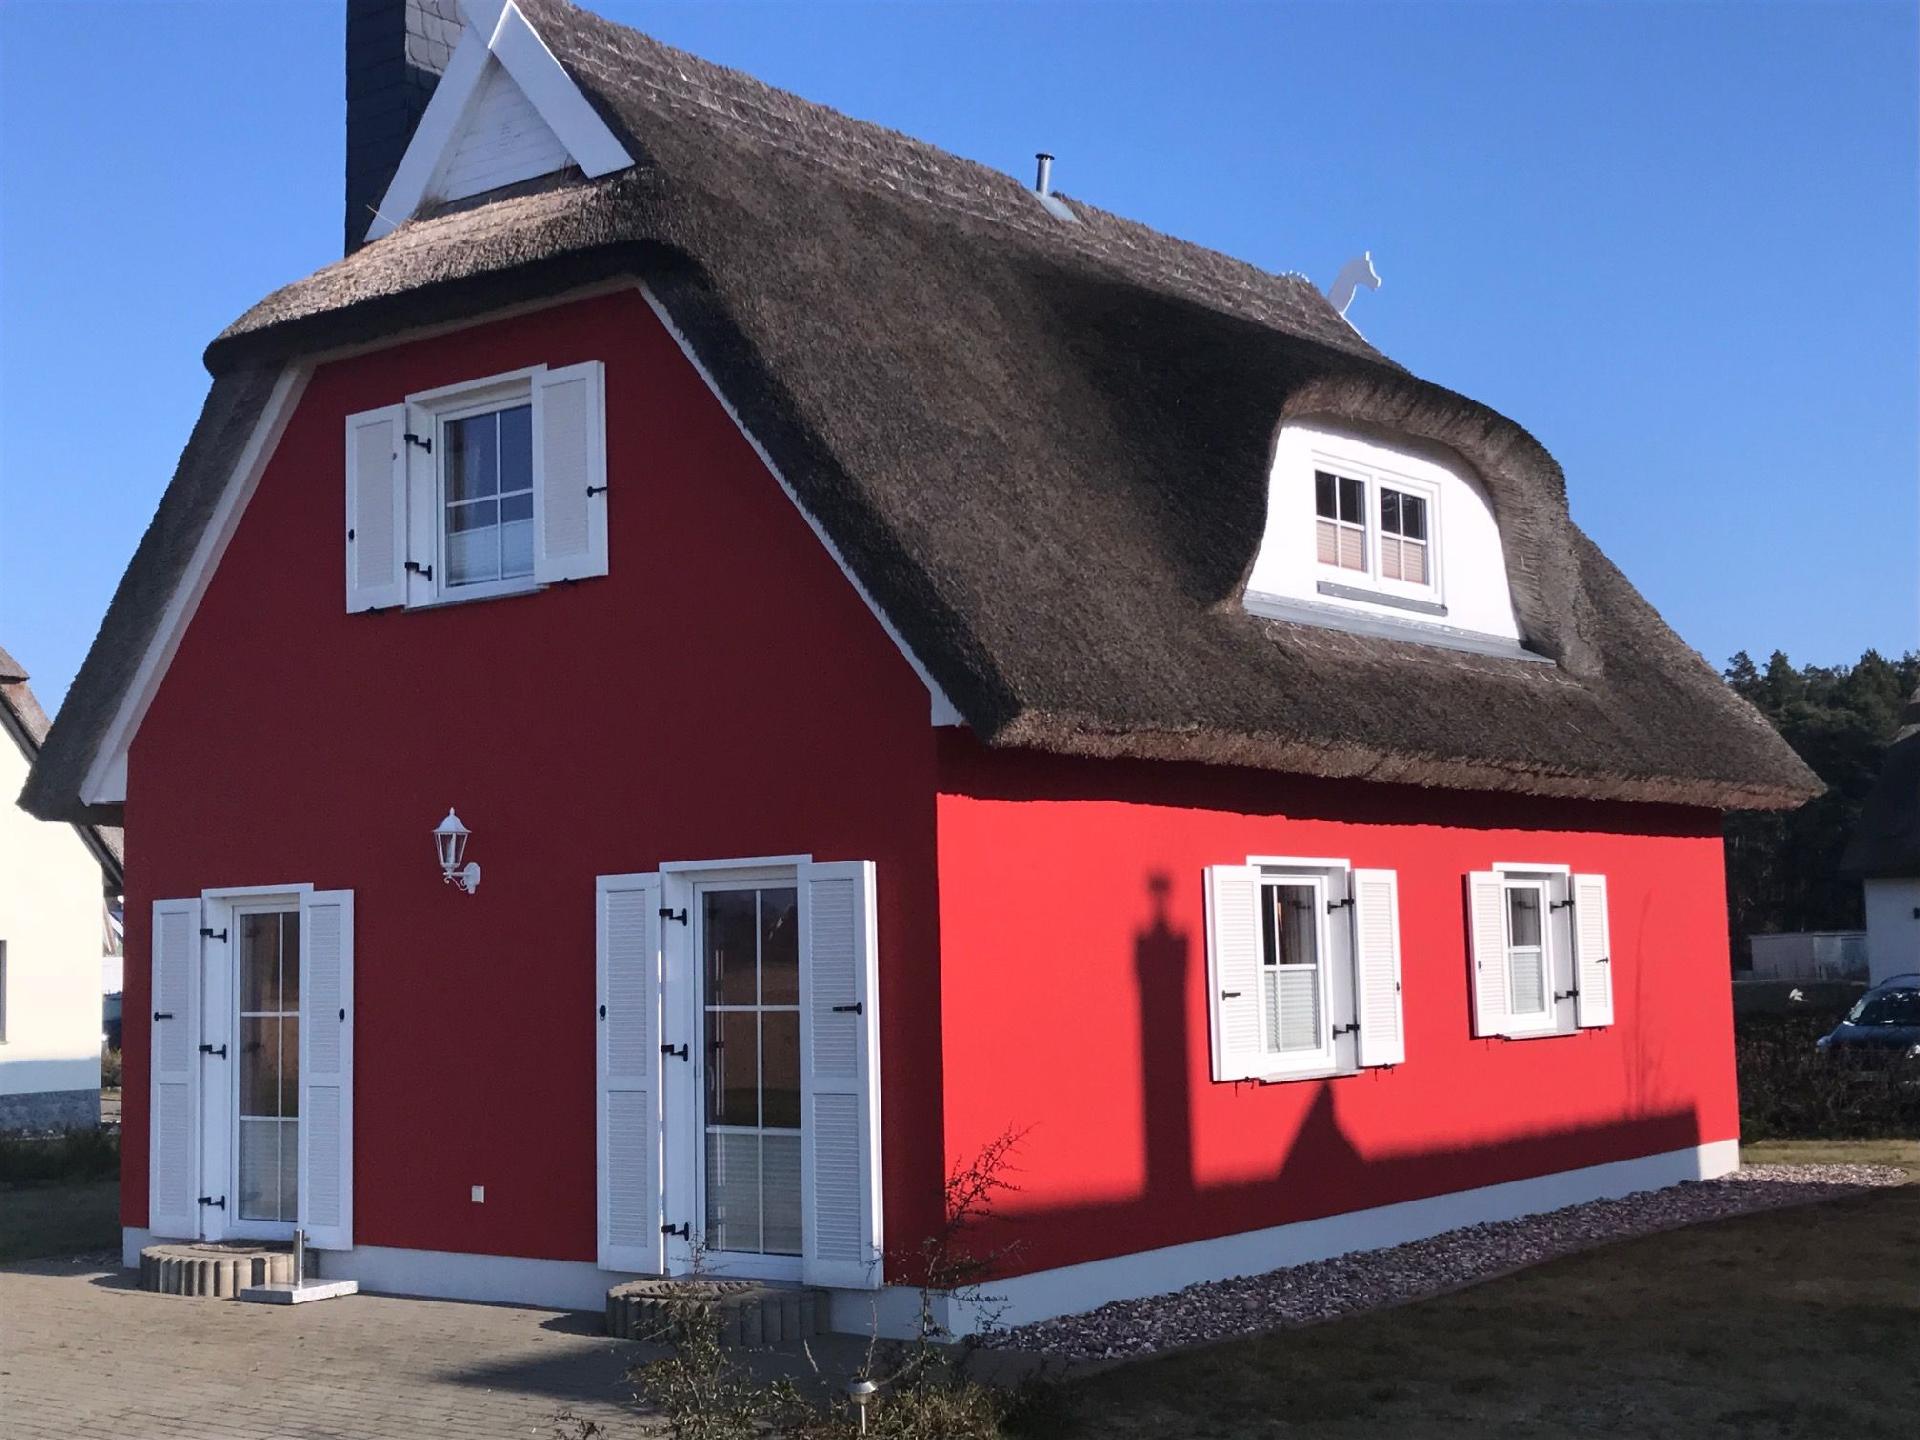 Ferienhaus in Juliusruh mit Offenerem Garten Ferienhaus in Mecklenburg Vorpommern